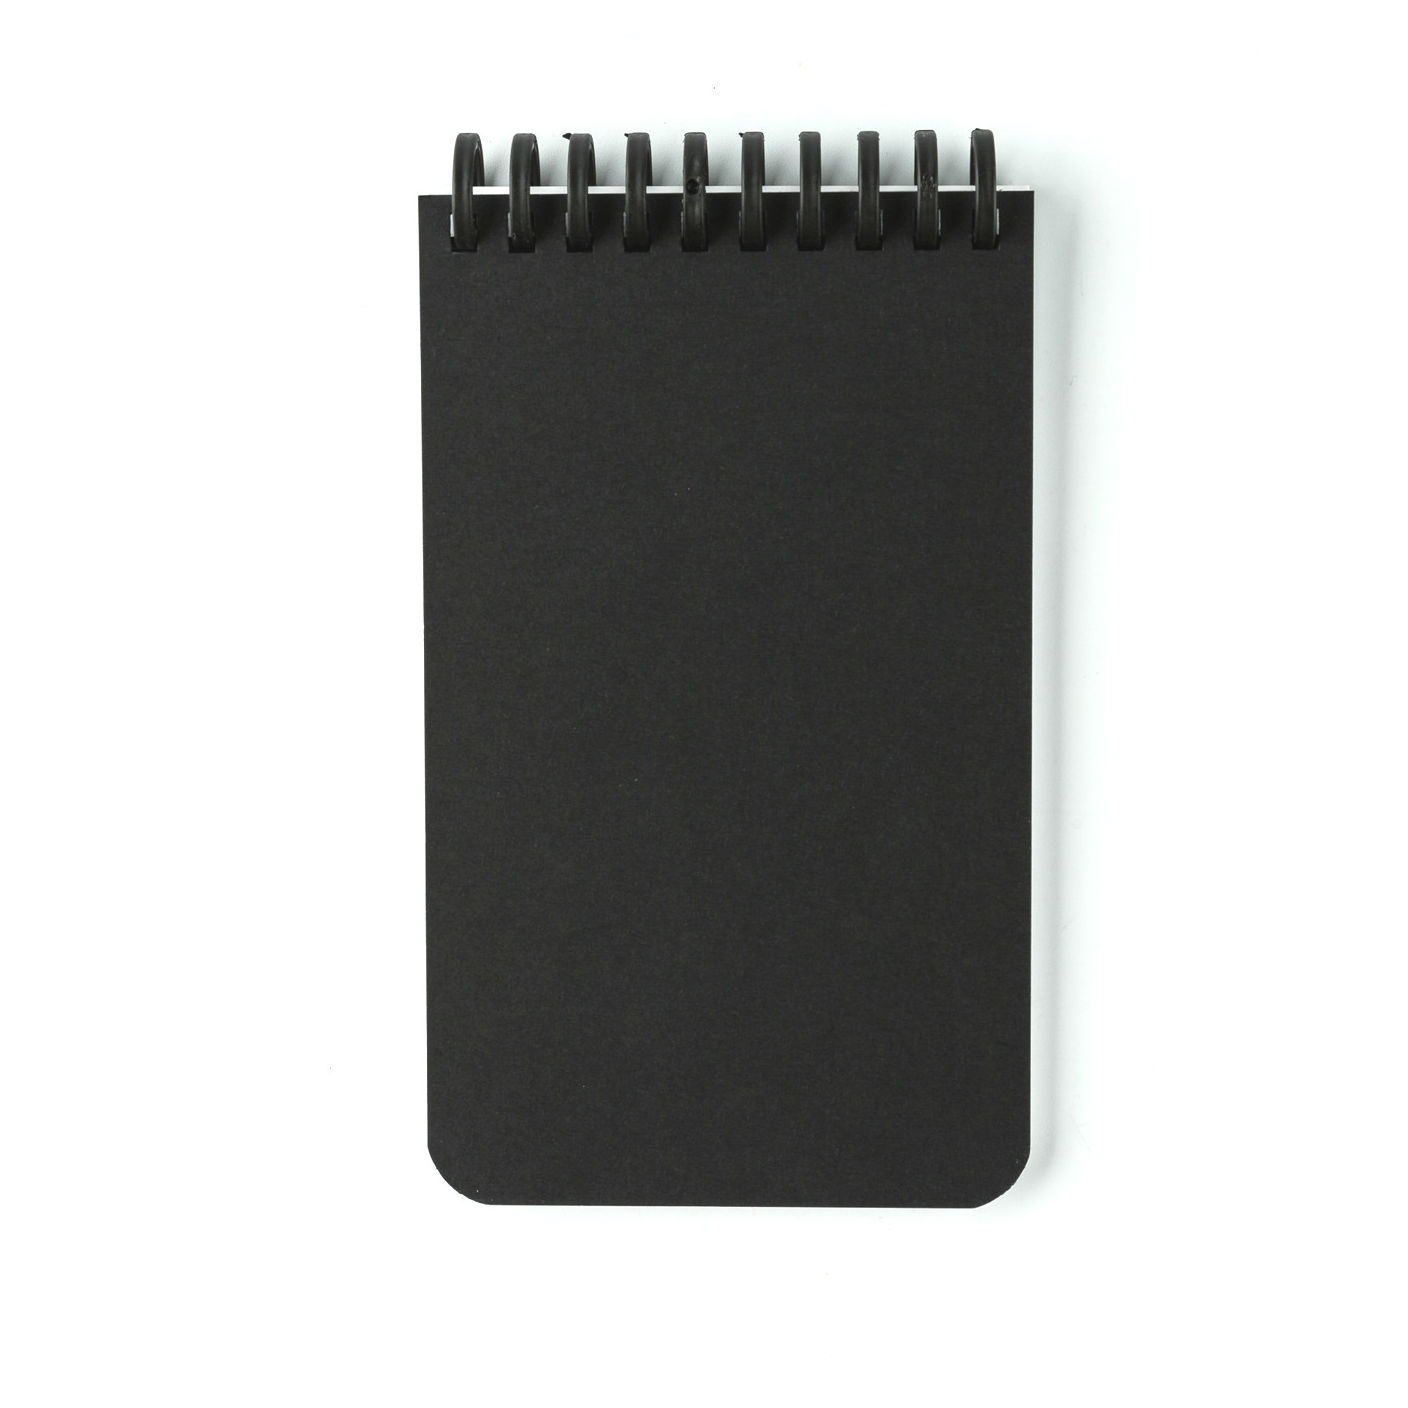 瑞士原产WHYNOTE可擦除可重复使用口袋笔记本套装 黑色